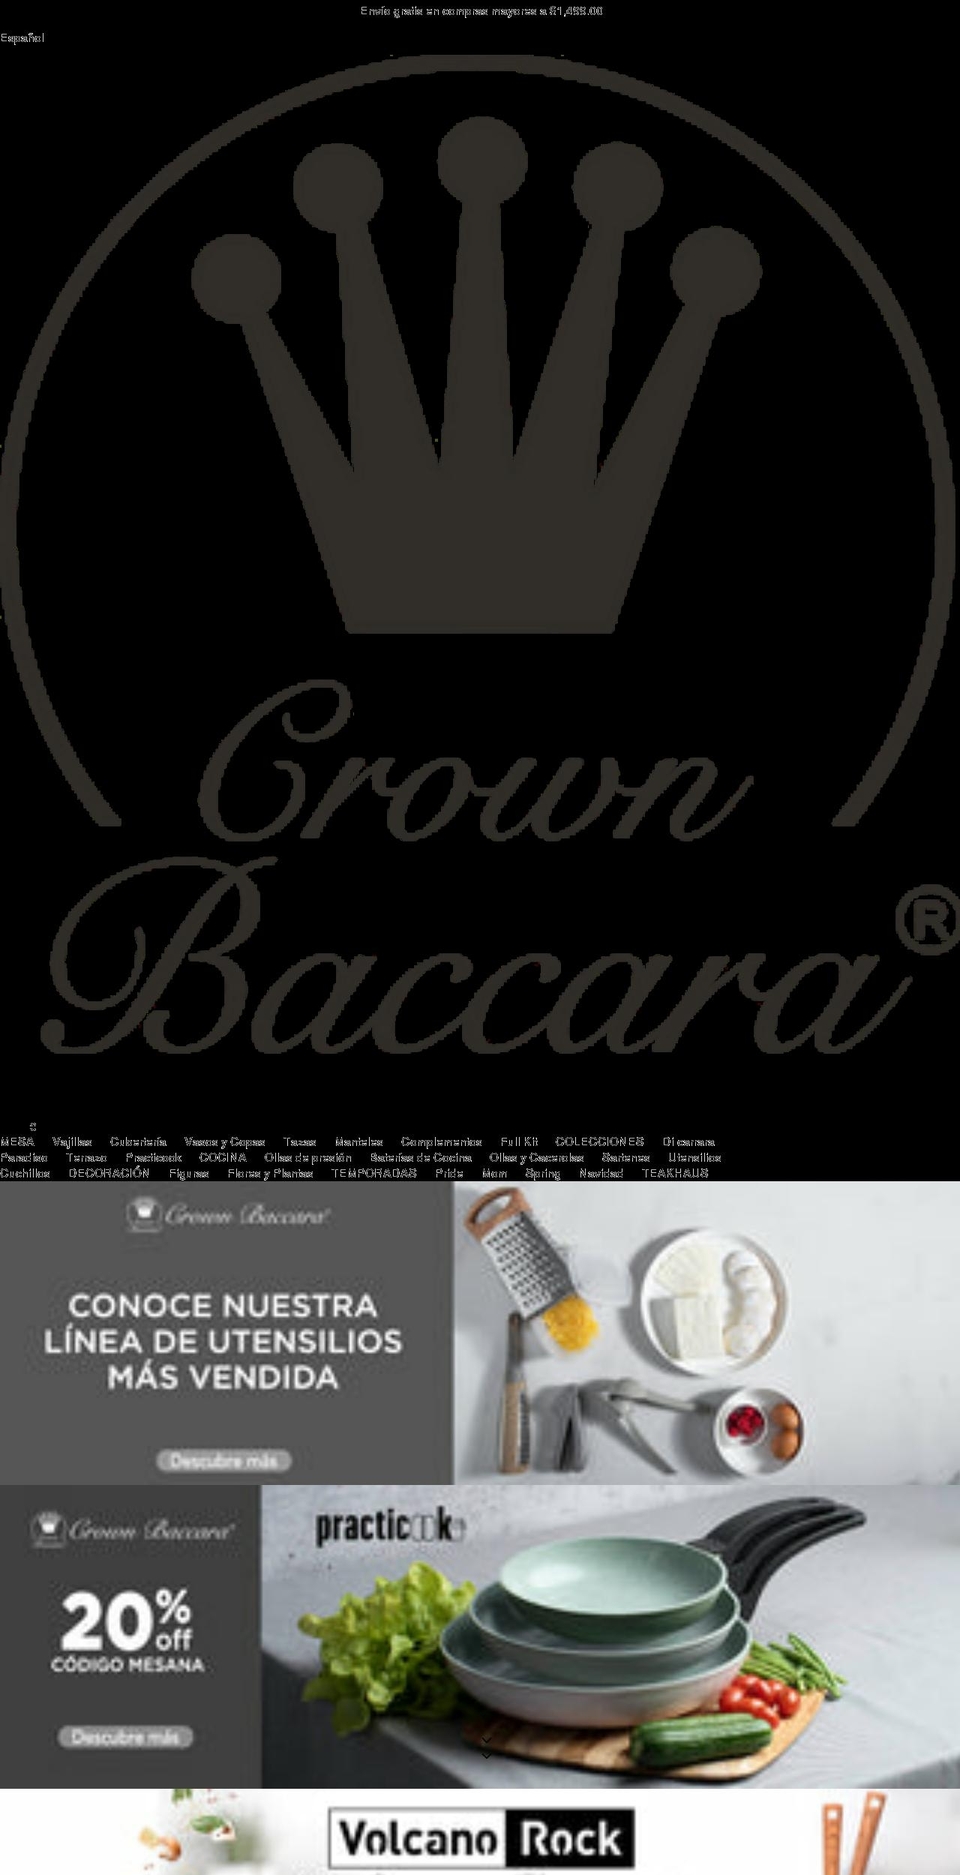 crownbaccara.com shopify website screenshot